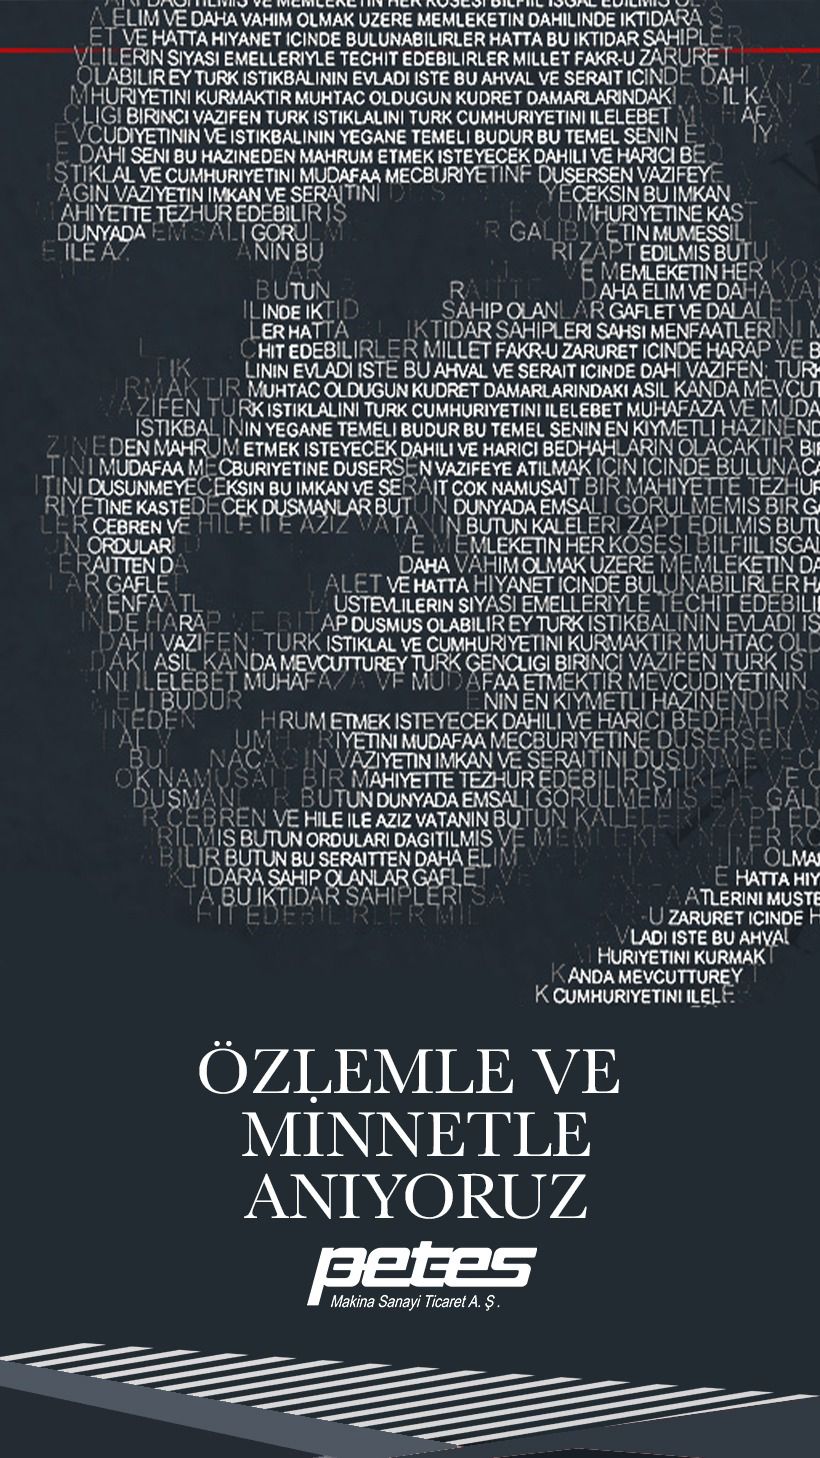 Ulu Önder Mustafa Kemal Atatürk'ü Saygı, Minnet ve Özlemle Anıyoruz